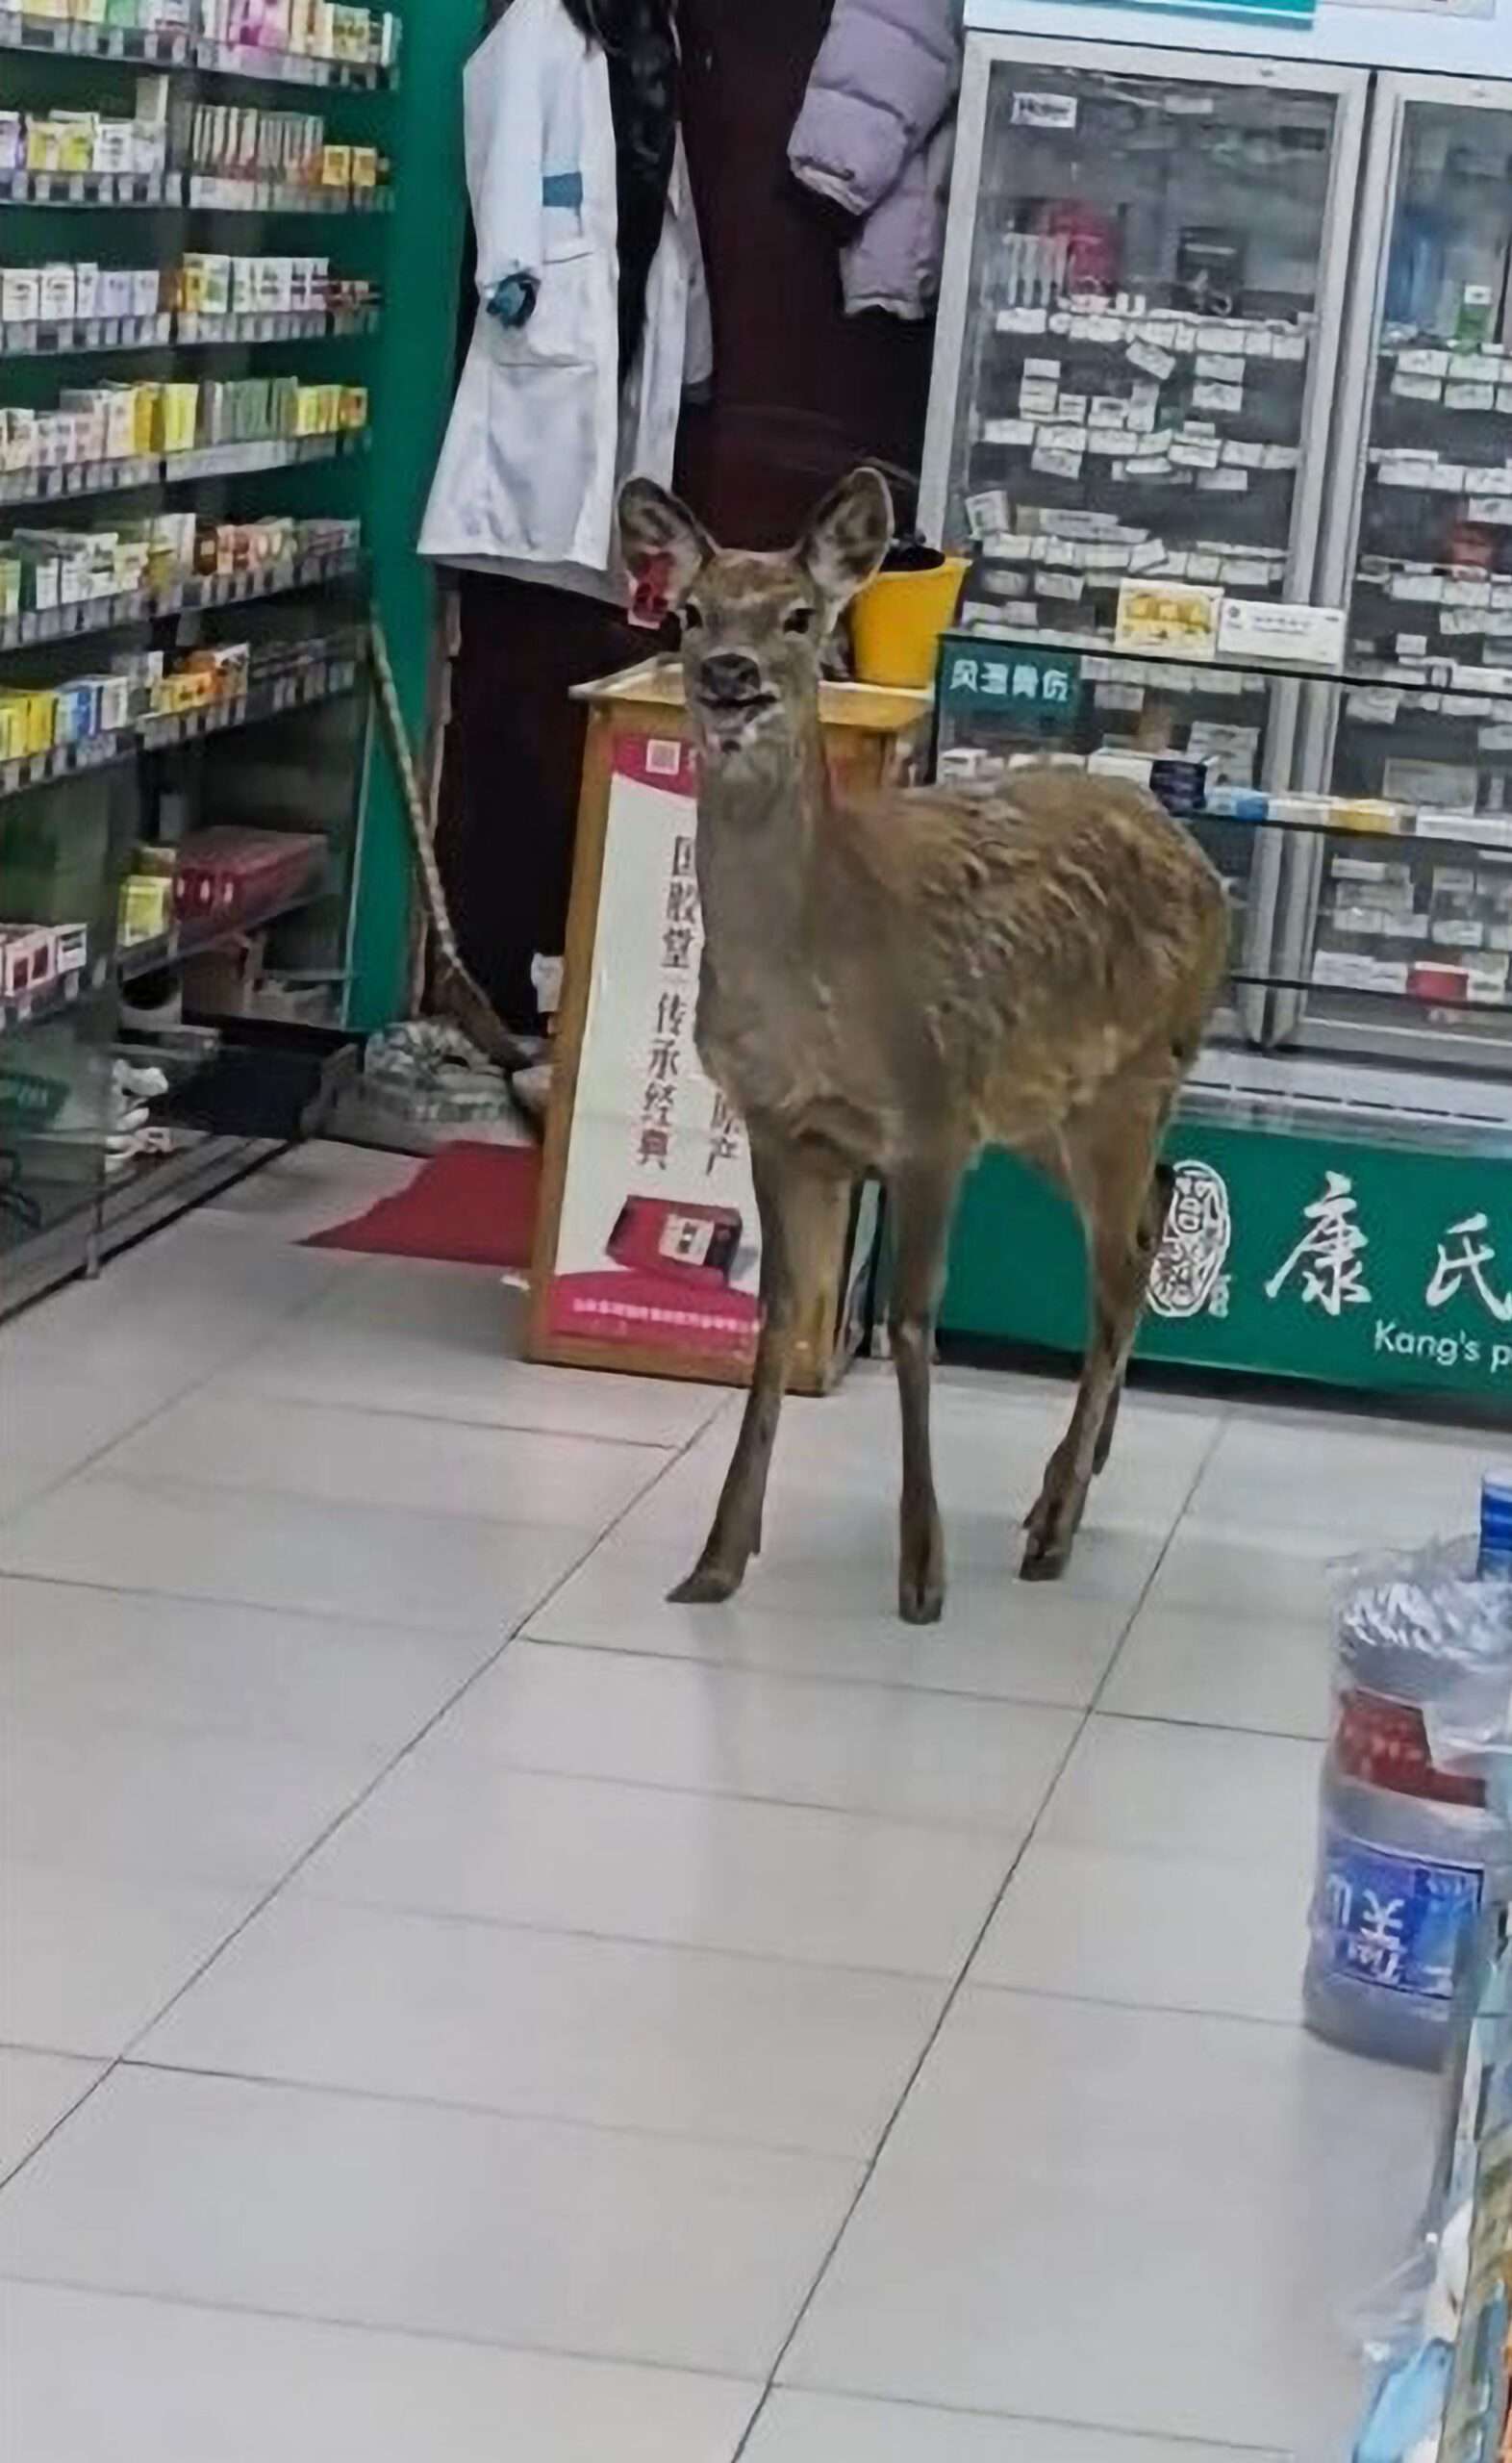 Deer Drugstore